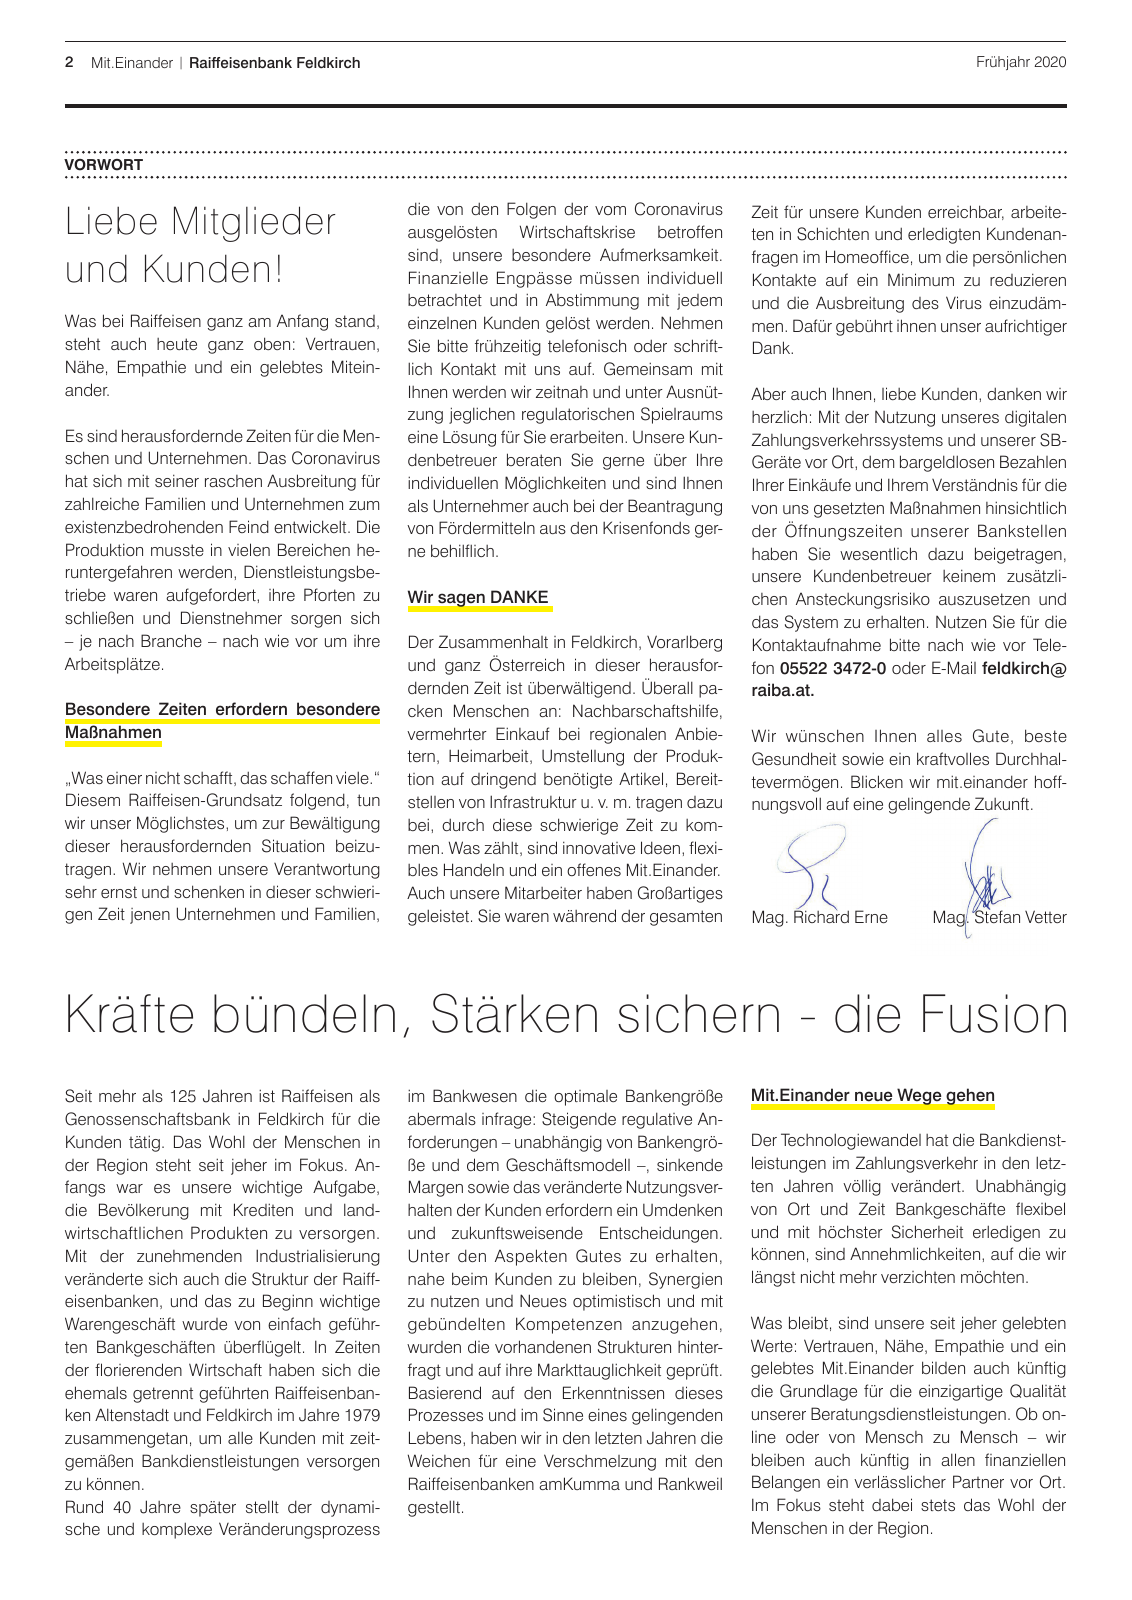 Vorschau Mitgliederzeitung RB Feldkirch Frühjahr 2020 Seite 2